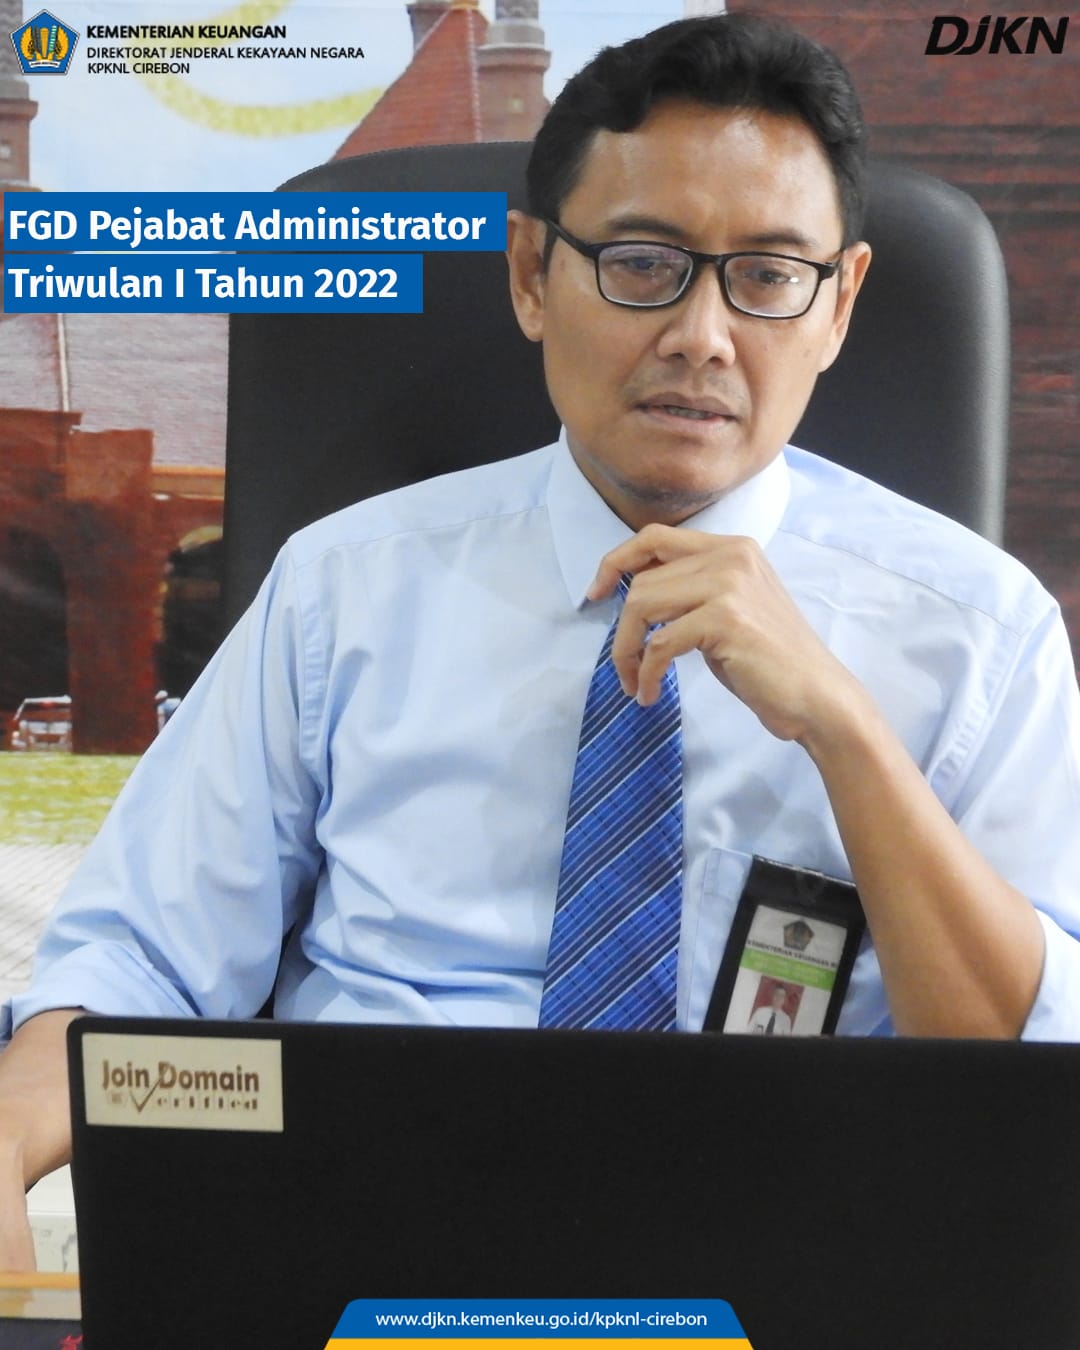 Pelaksanakan FGD Pejabat Administrator, Dwi Wahyudi: Jaga Keamanan Informasi Pribadi Dan Institusi